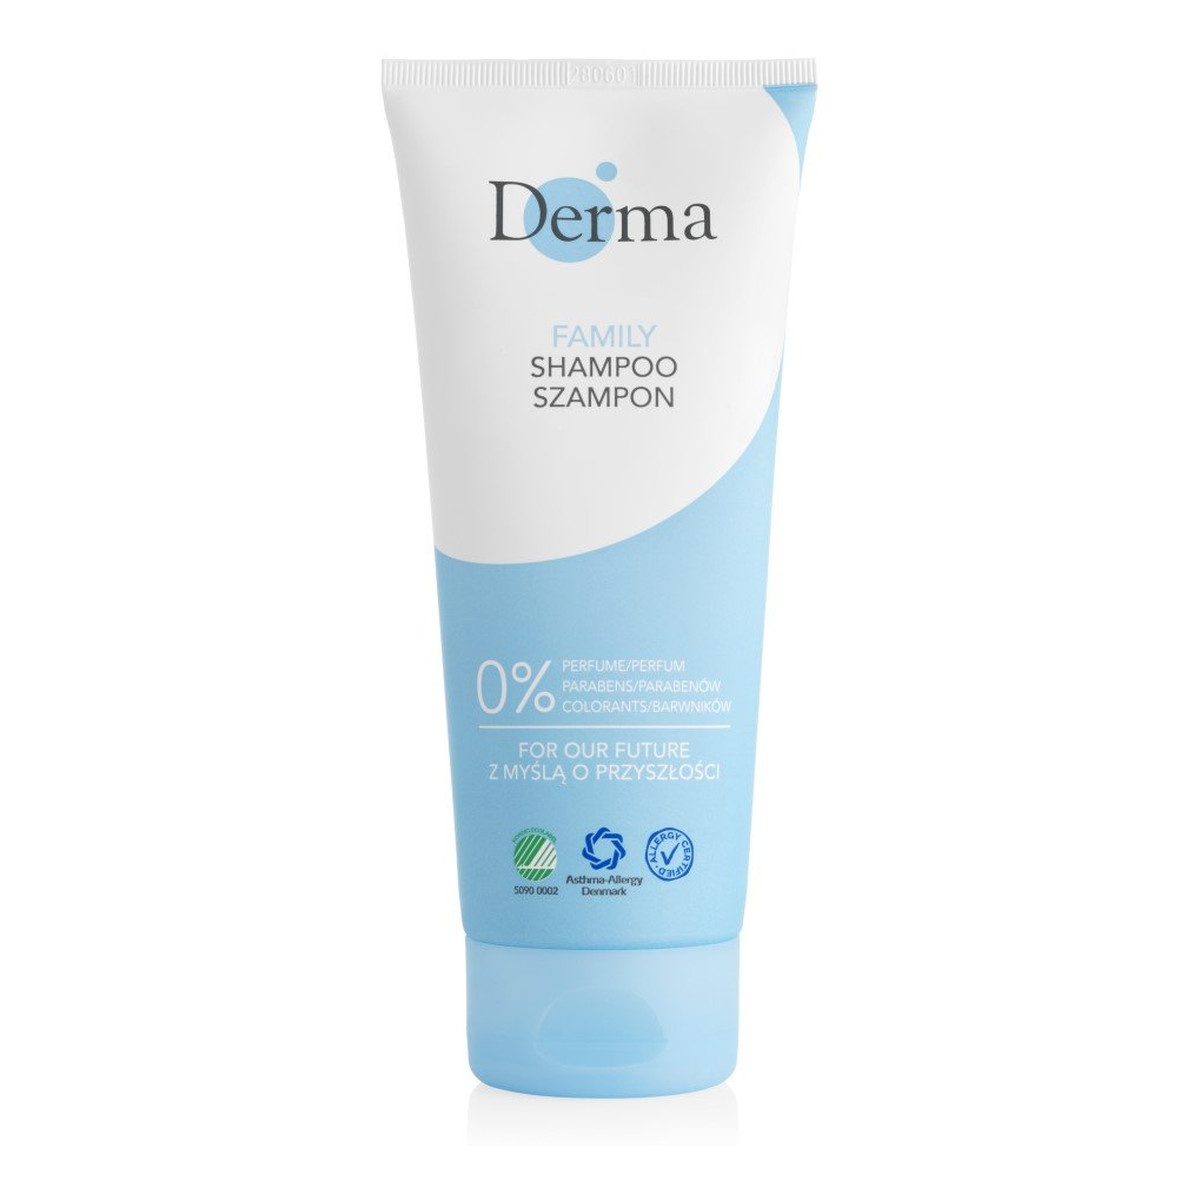 Derma Family shampoo szampon do włosów 200ml